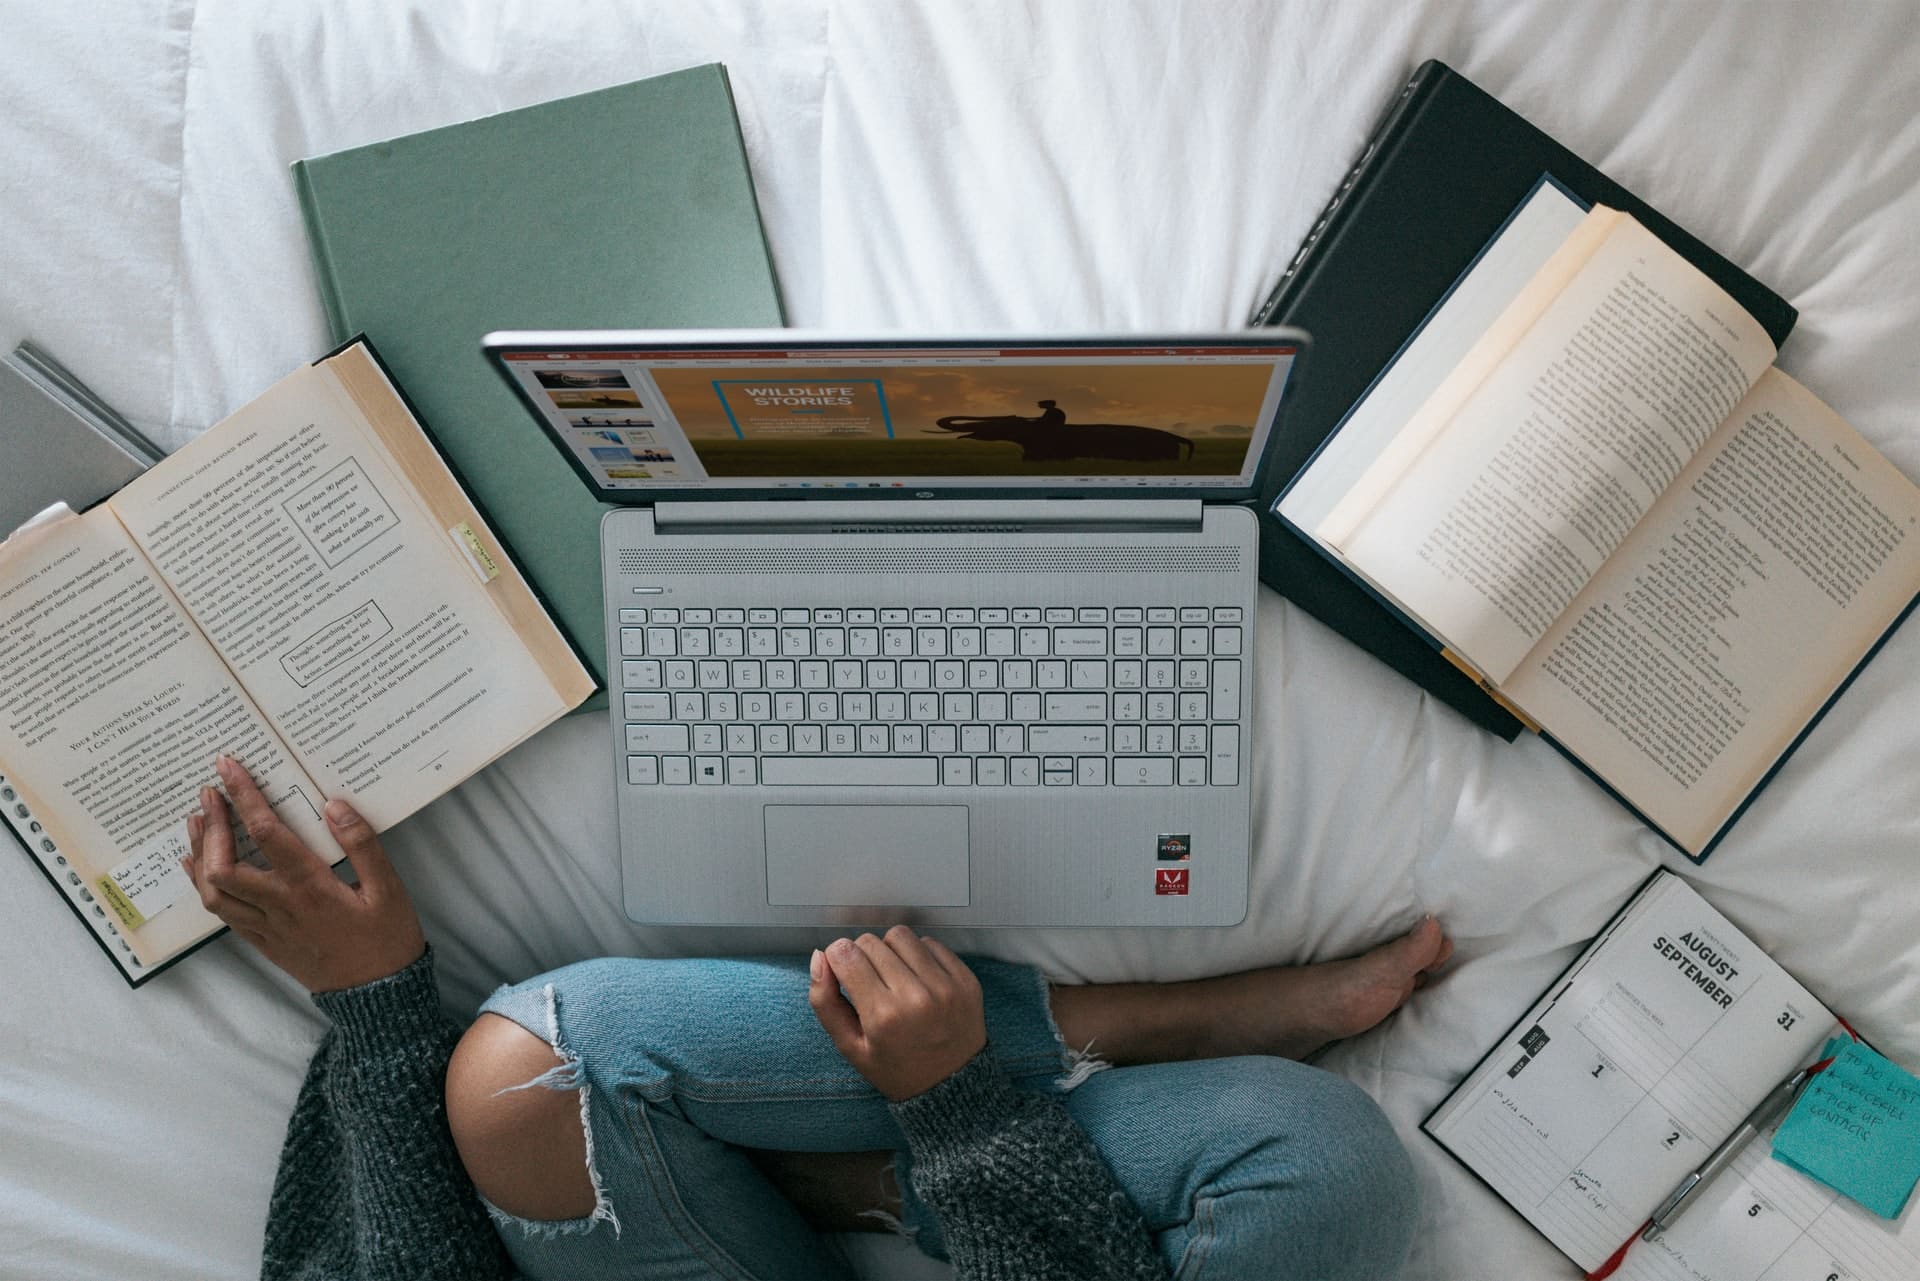 Das Bild zeigt eine Person vor ihrem Laptop. Neben dem Laptop liegen mehrere geöffnete Bücher.